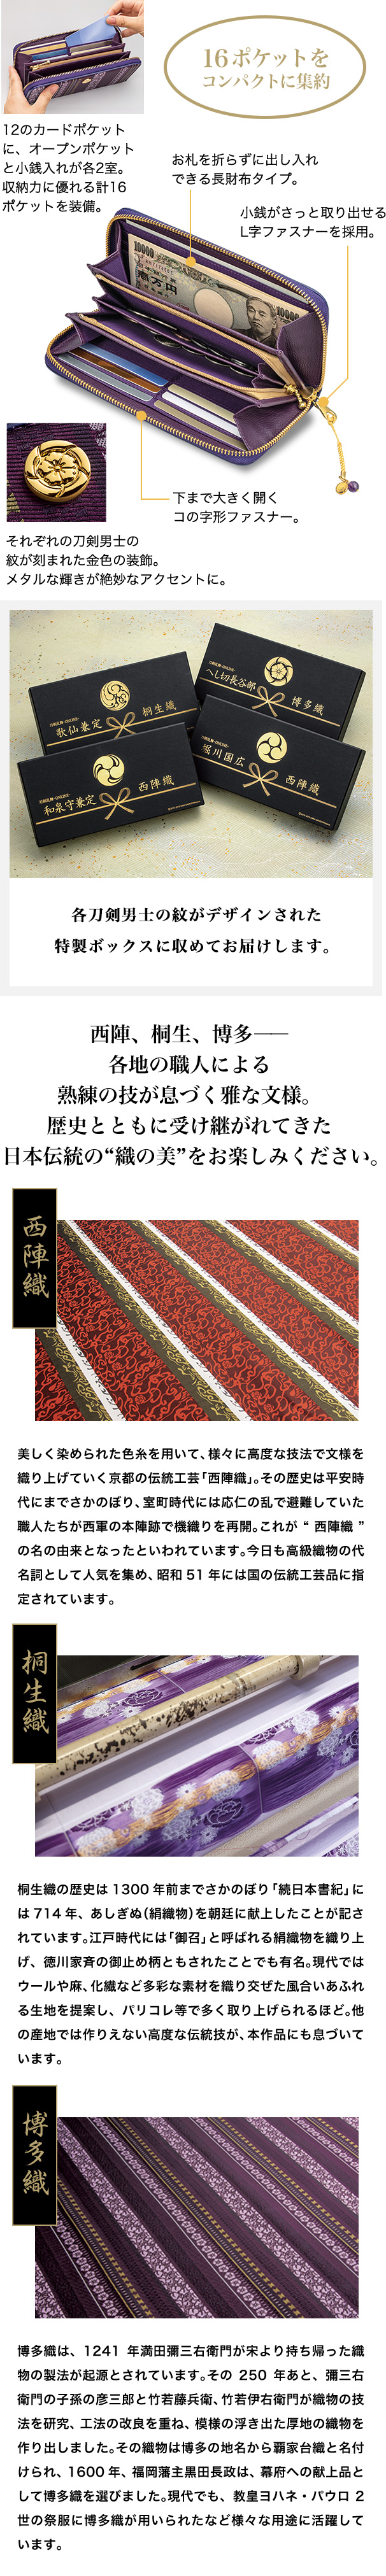 西陣、桐生、博多——各地の職人による熟練の技が息づく雅な文様。歴史とともに受け継がれてきた  日本伝統の“織の美”をお楽しみください。